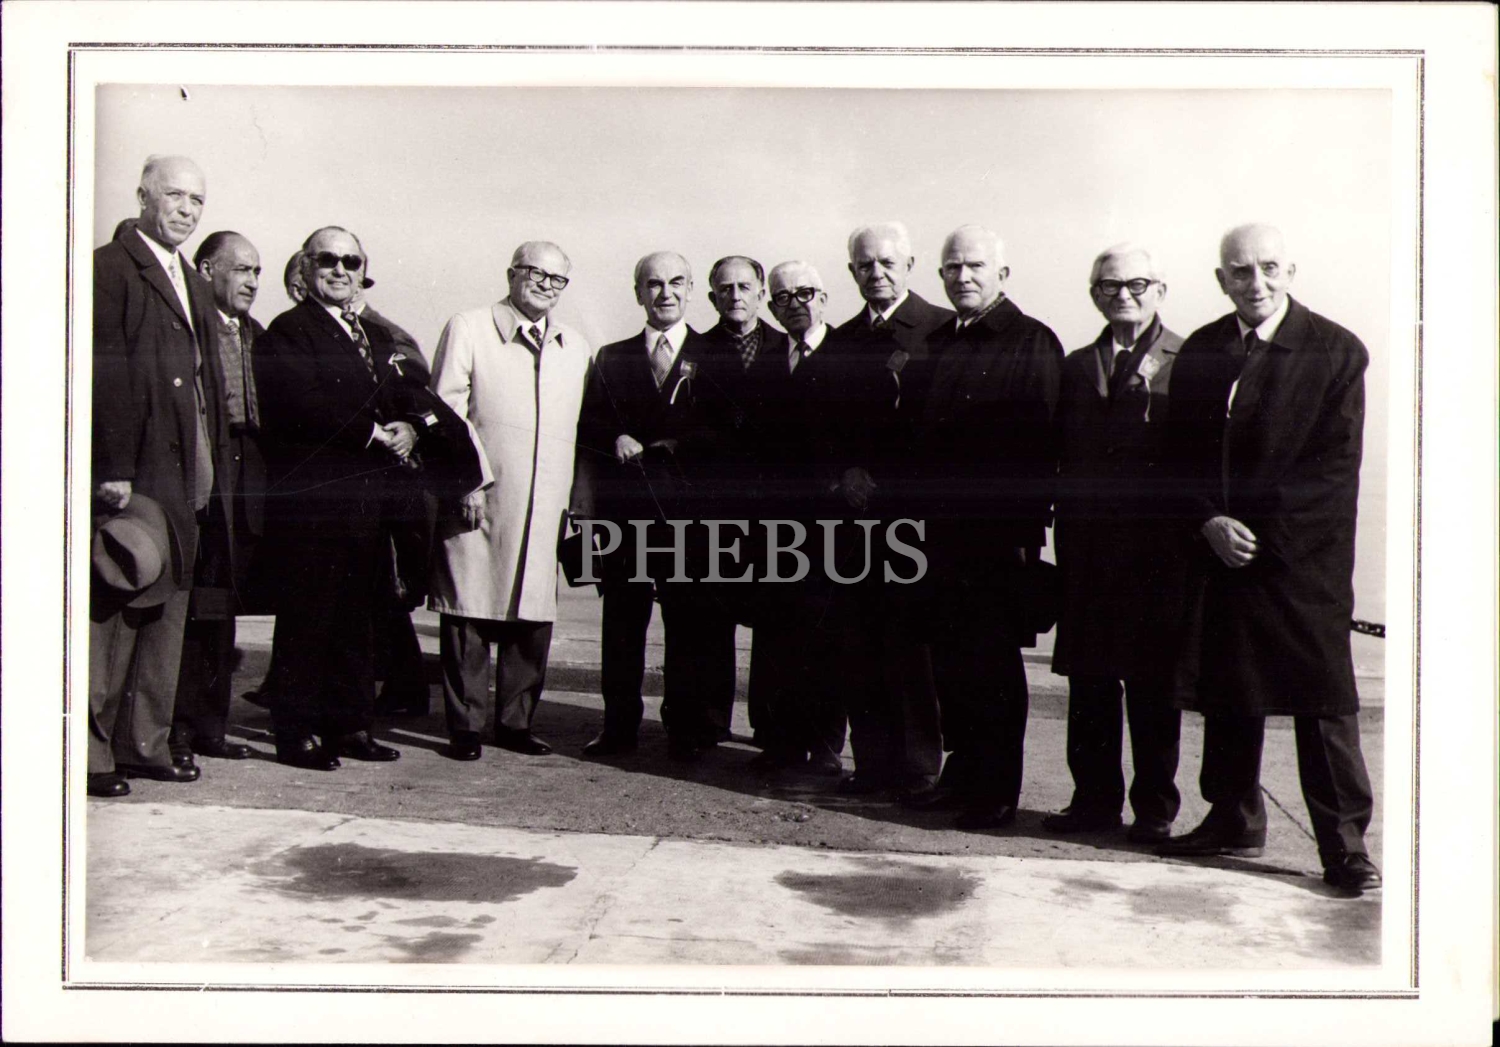 Oramiral ve Cumhurbaşkanı Fahri Sabit Korutürk ve arkadaşları Deniz Harp Okulu'nun 201. kuruluş yıldönümü hatırası, 1974 tarihli, 14x20 cm